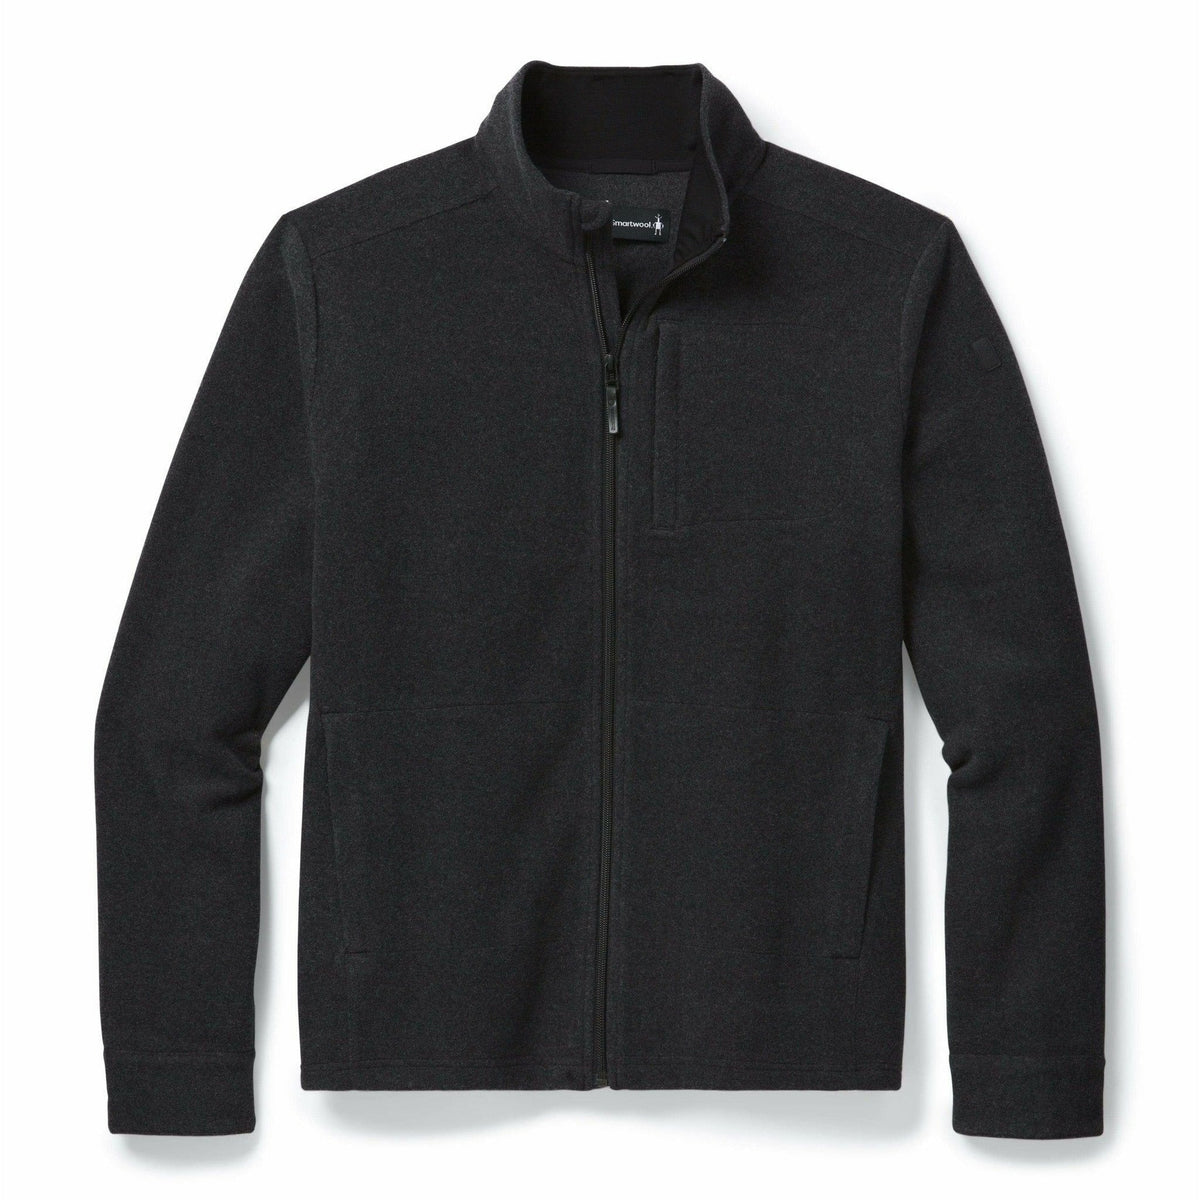 Smartwool Mens Merino Sport Fleece Full-Zip Jacket - GoBros.com in